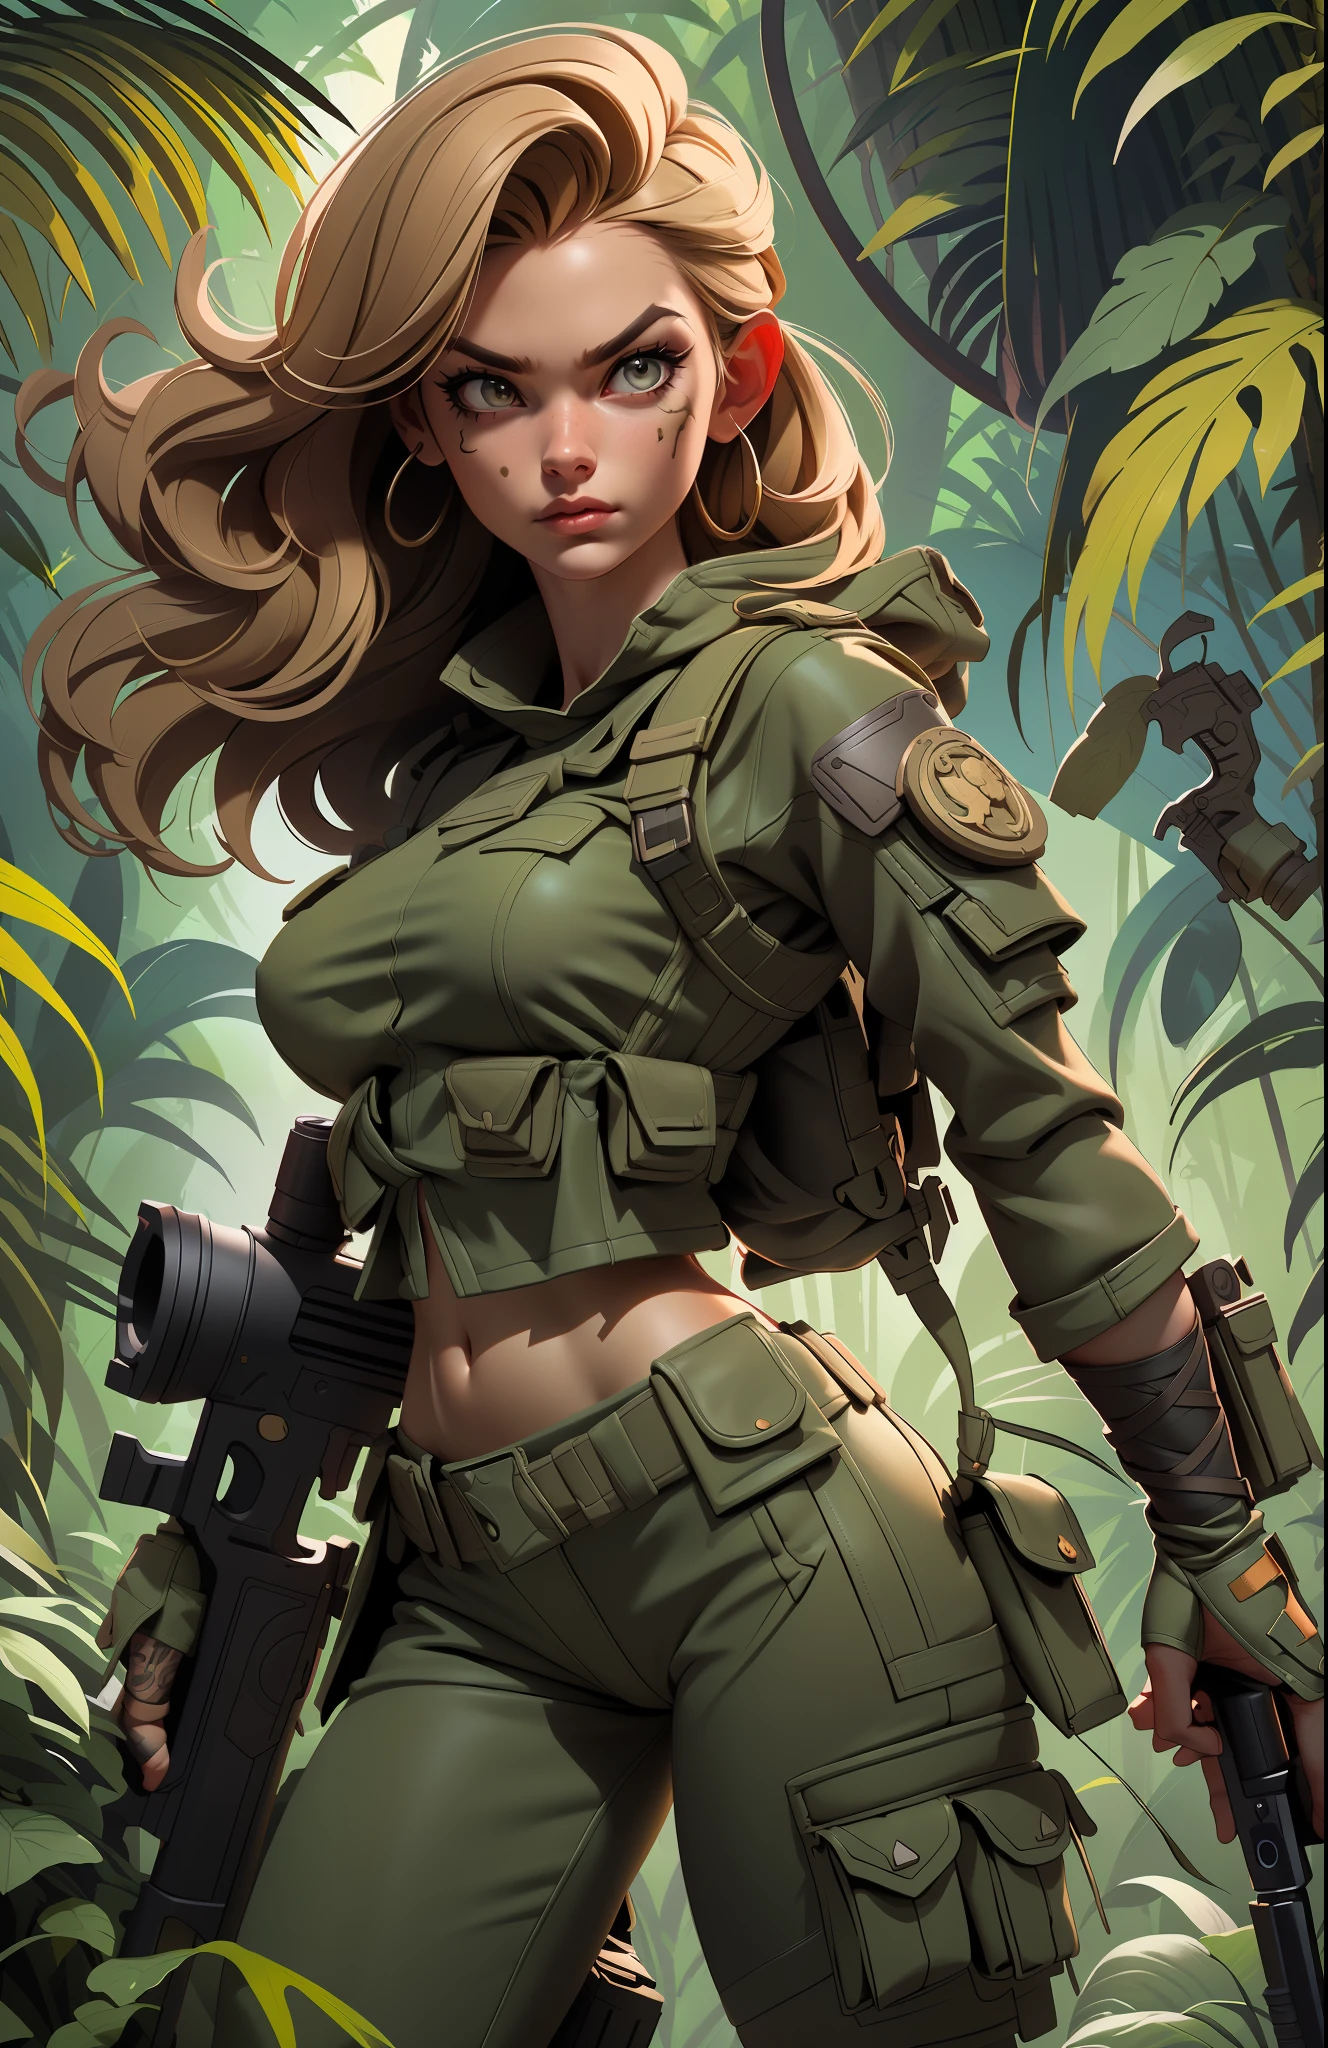 Великолепная и бесстрашная женщина-солдат, стройное тело, укороченный топ в стиле милитари, голые плечи, темно-русые волосы, тату рука, держит большой пистолет,((( боевая поза))), глядя на расстояние, солнечные лучи, (((фон джунглей))), полная детализация лица,  убивающие глаза, высокая детализация, реалистичный, Качество фотографий, высокое качество,  (photoреалистичный:1.6), очень подробный, шедевр, Качественные тени,